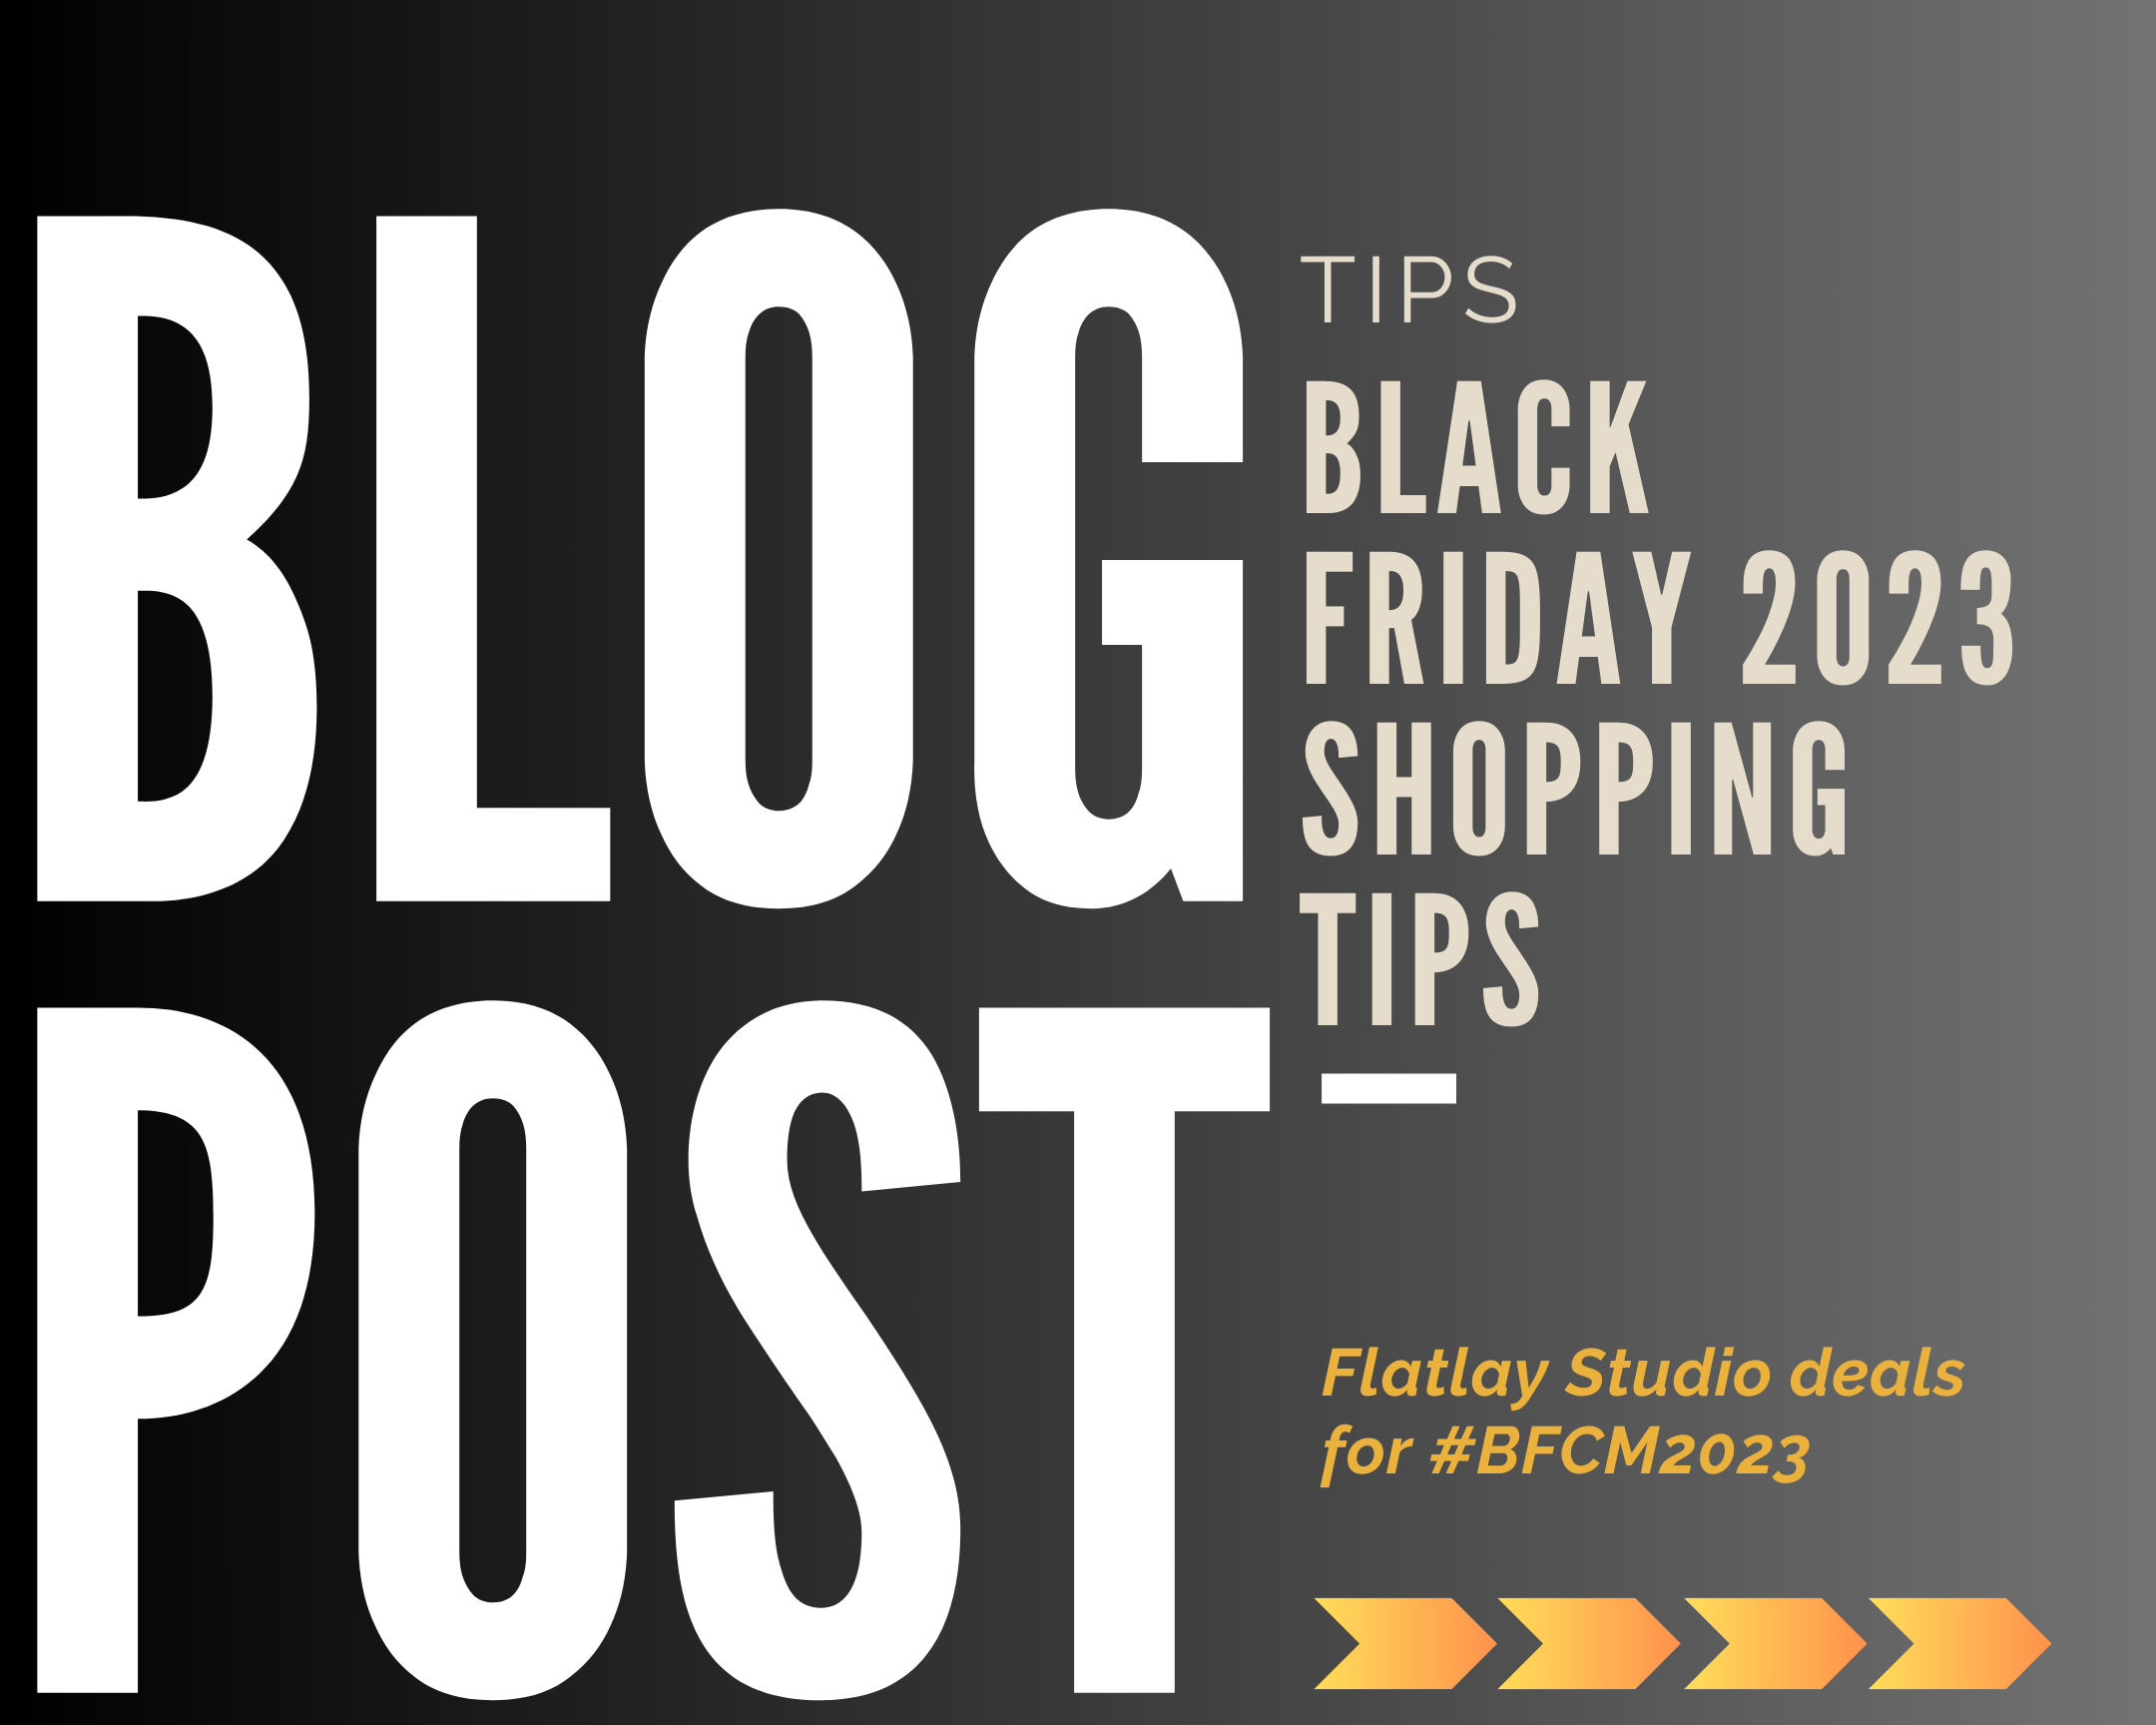 Flatlay Studio Black Friday Deals 2023